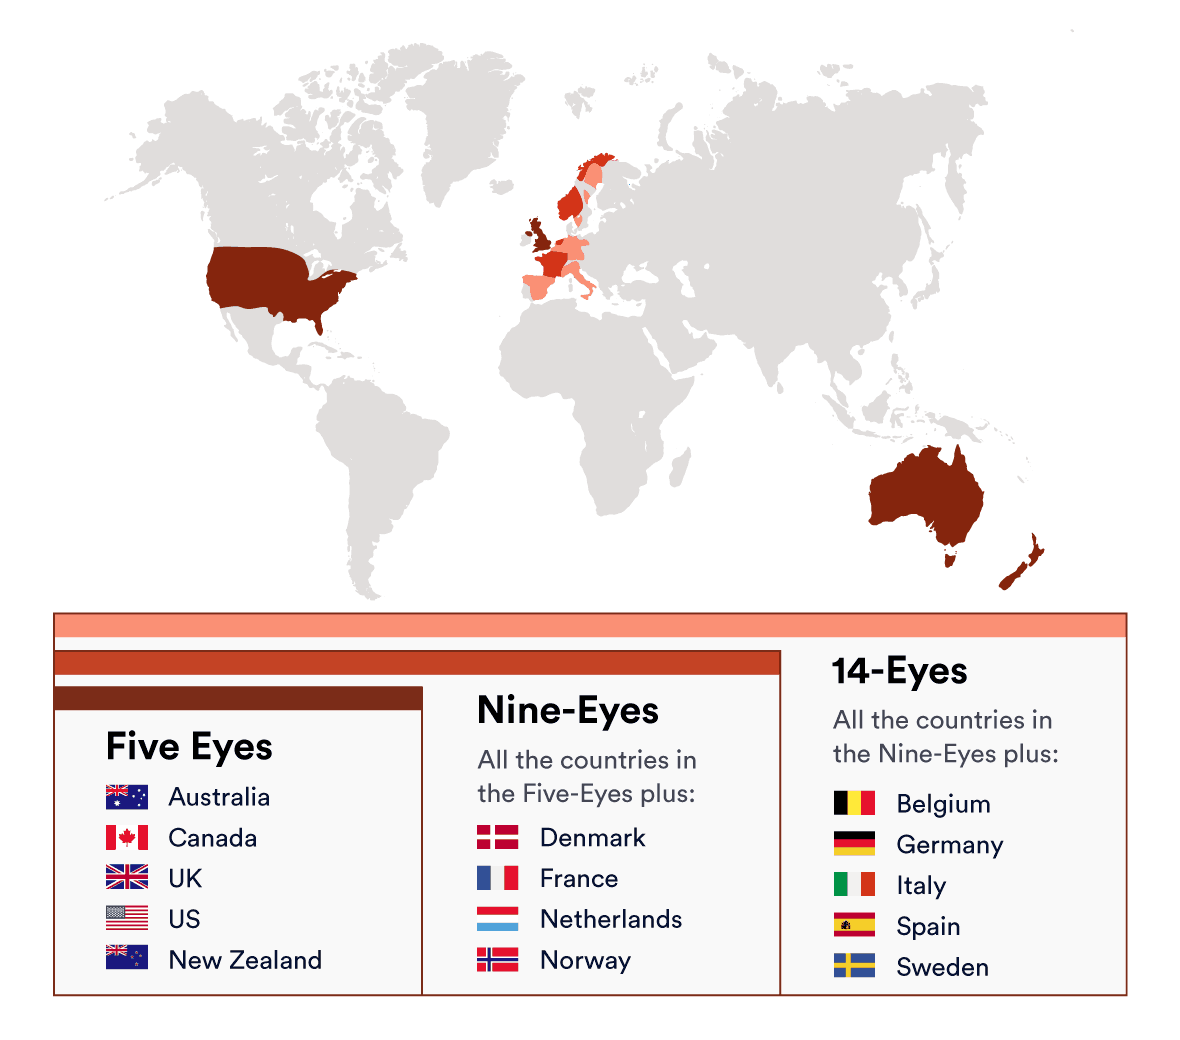 Mapa de los países que conforman los Cinco Ojos, Nueve Ojos y Catorce Ojos.